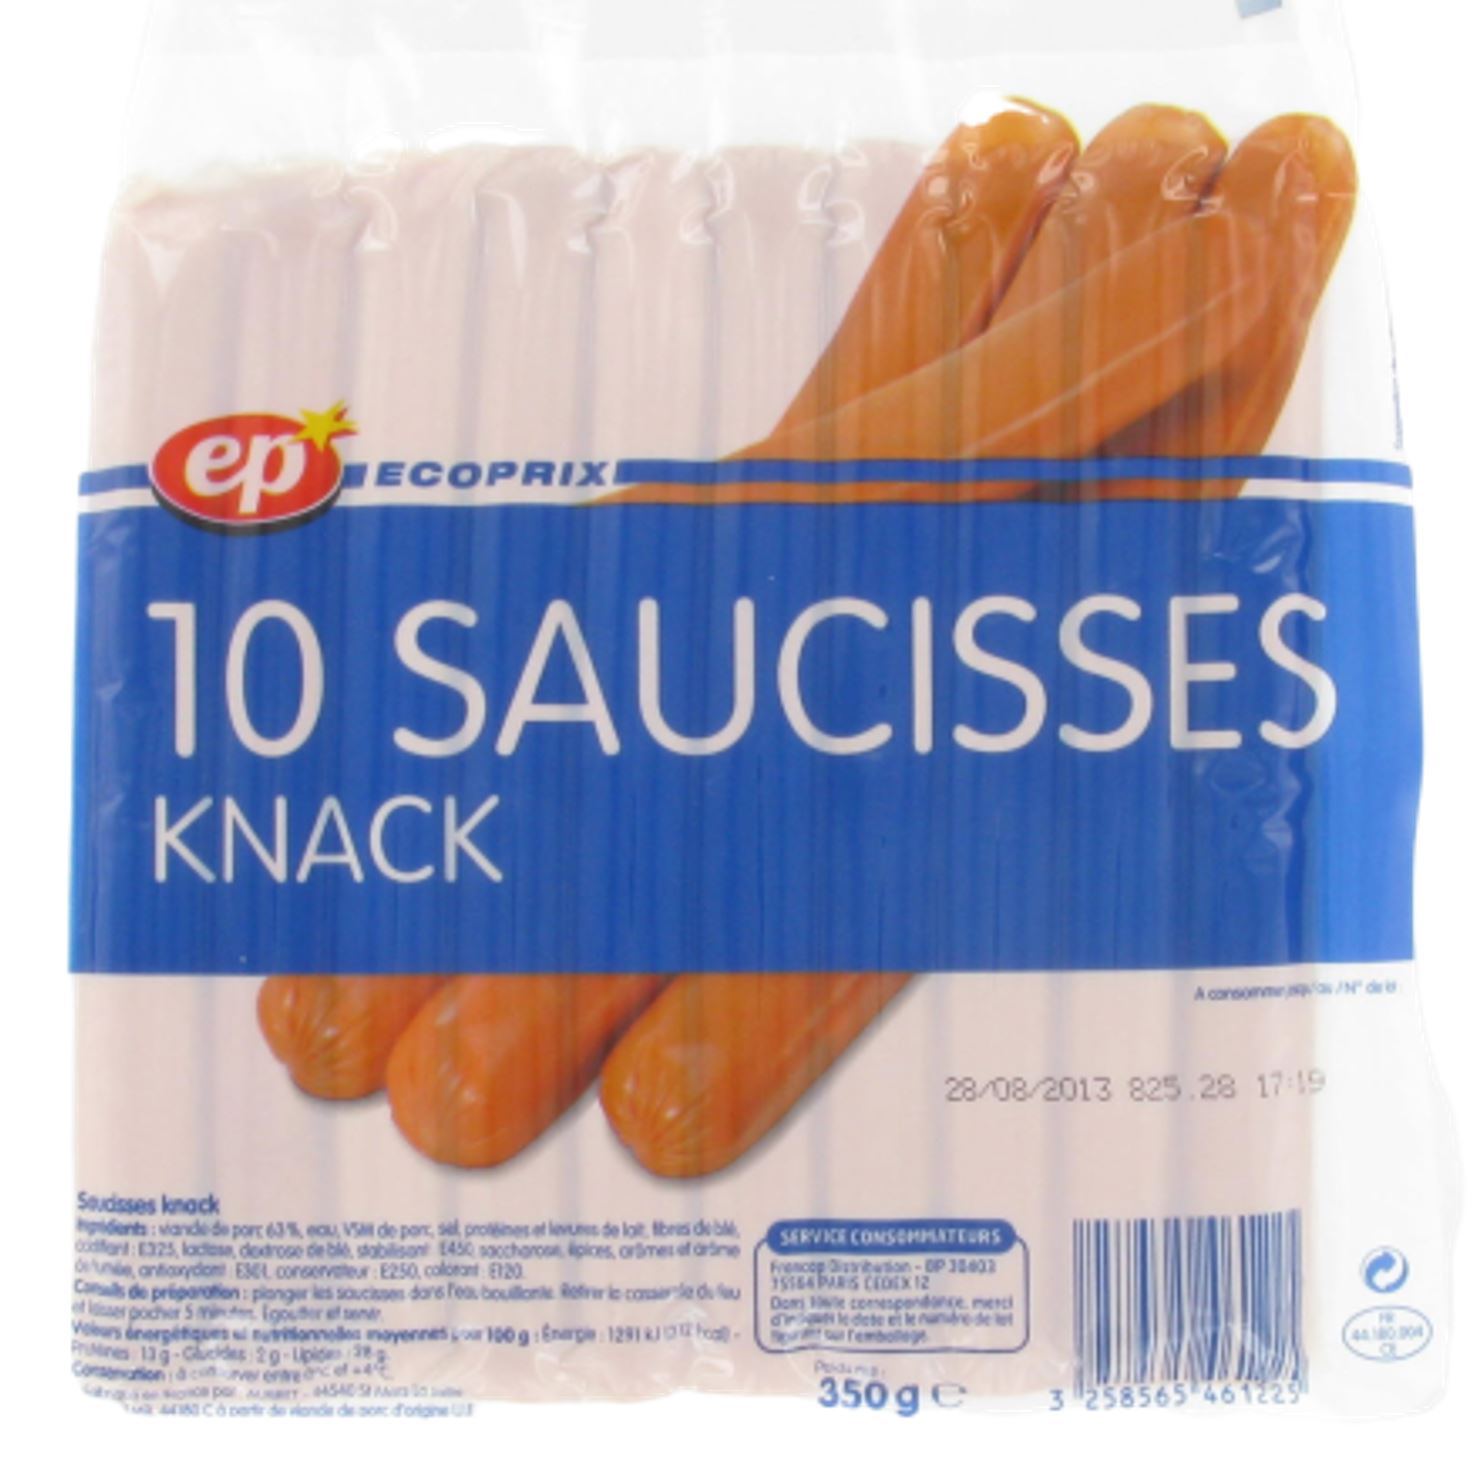 La gamme de saucisses Knacki Spécialités